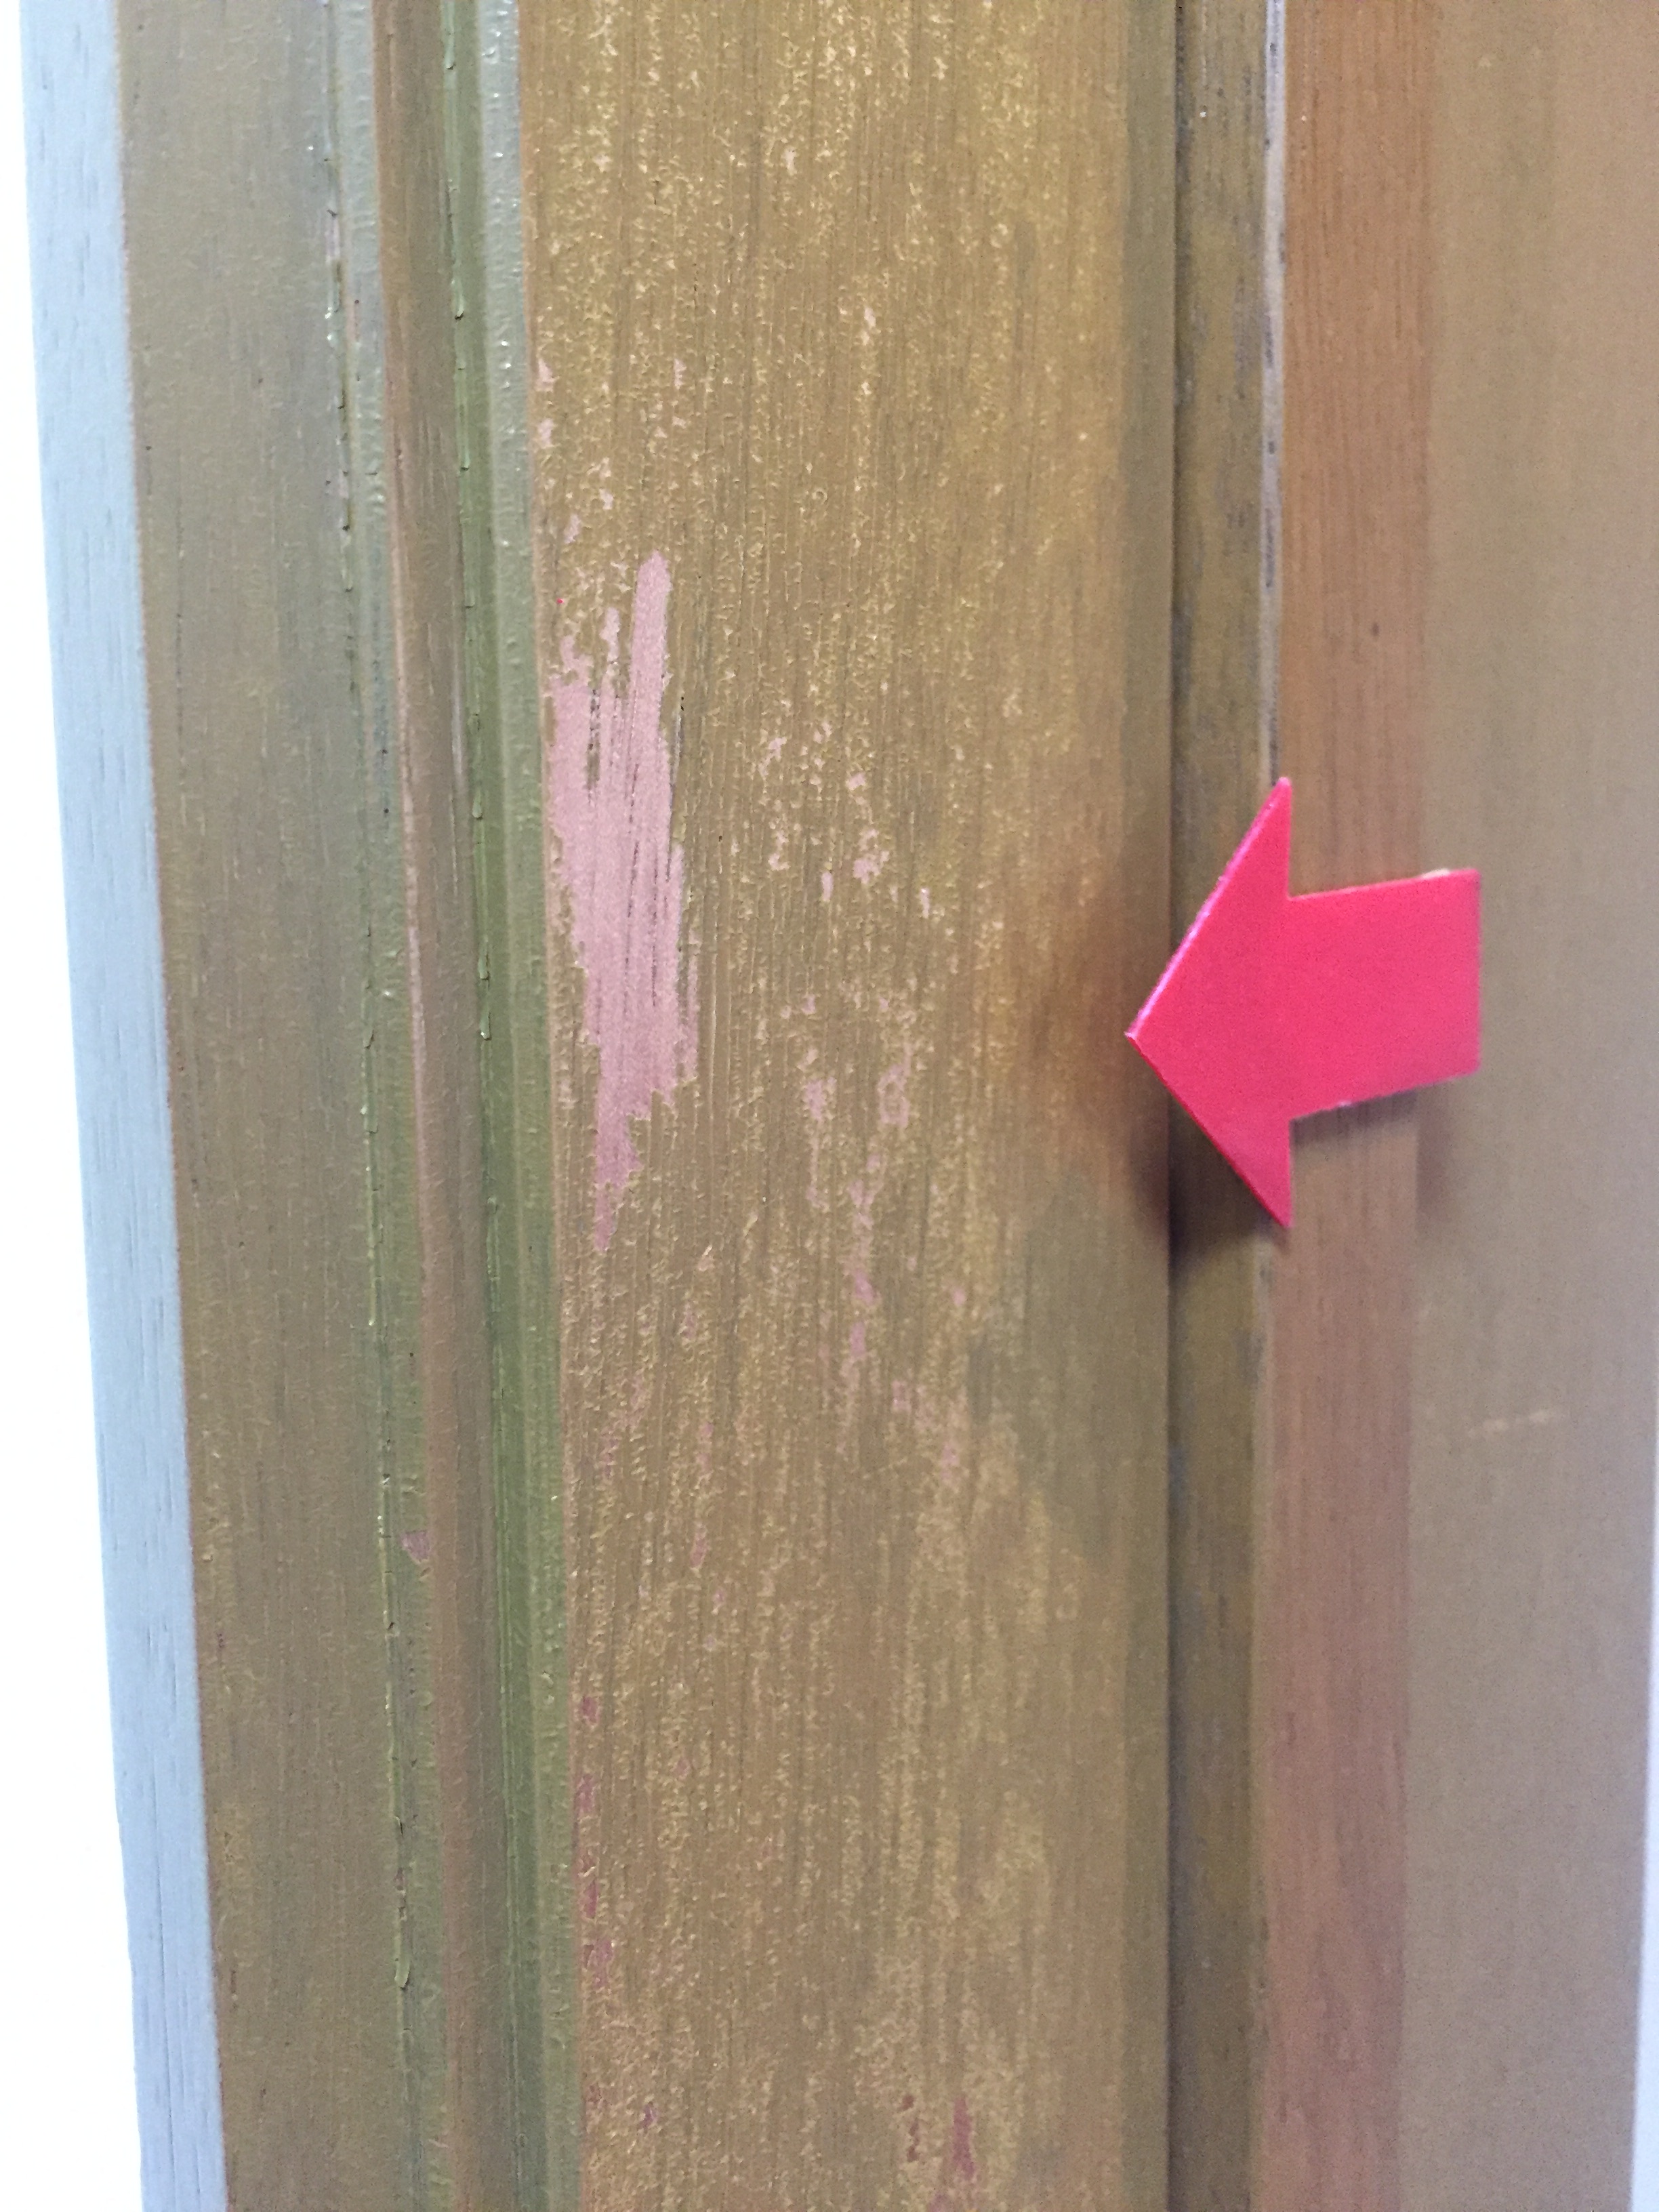 ドアの木枠 スチール枠 鉄 の修理 自分でもできる枠直し方 ドア 穴 フローリング傷へこみ アルミサッシ補修 浴槽塗装 外壁屋根塗装工事なら宇都宮リペア